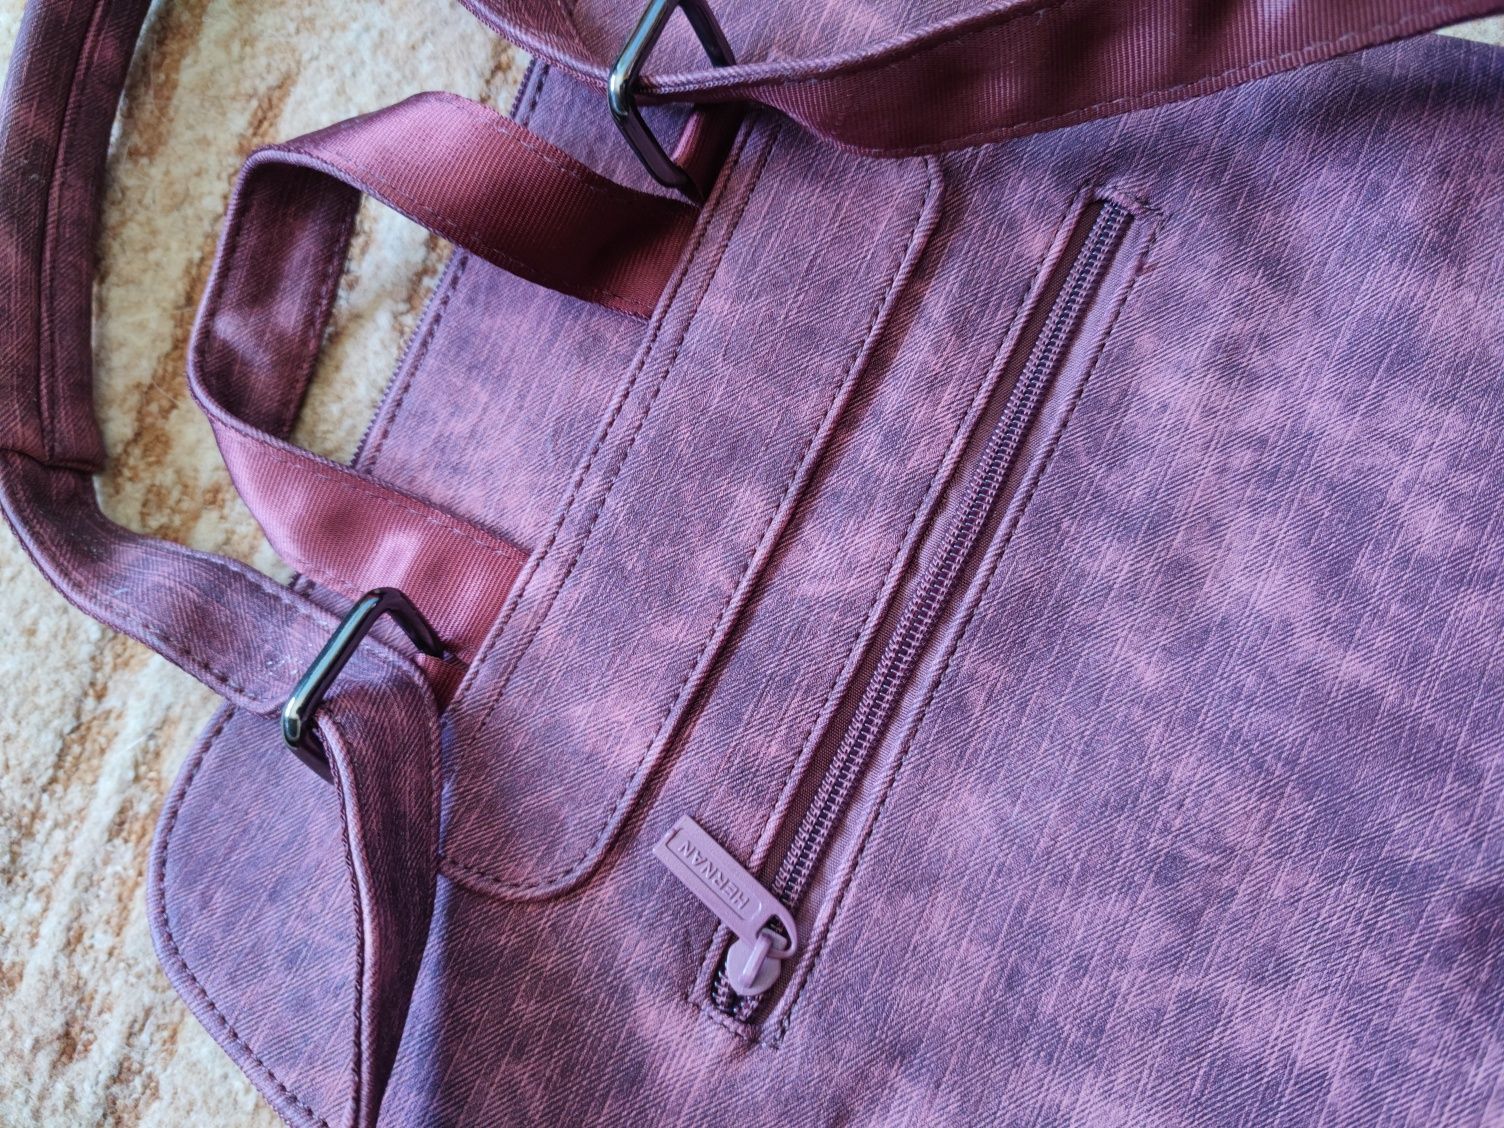 H&B Hernan Backpacks torba plecak torebka czerwona bordowa nowa